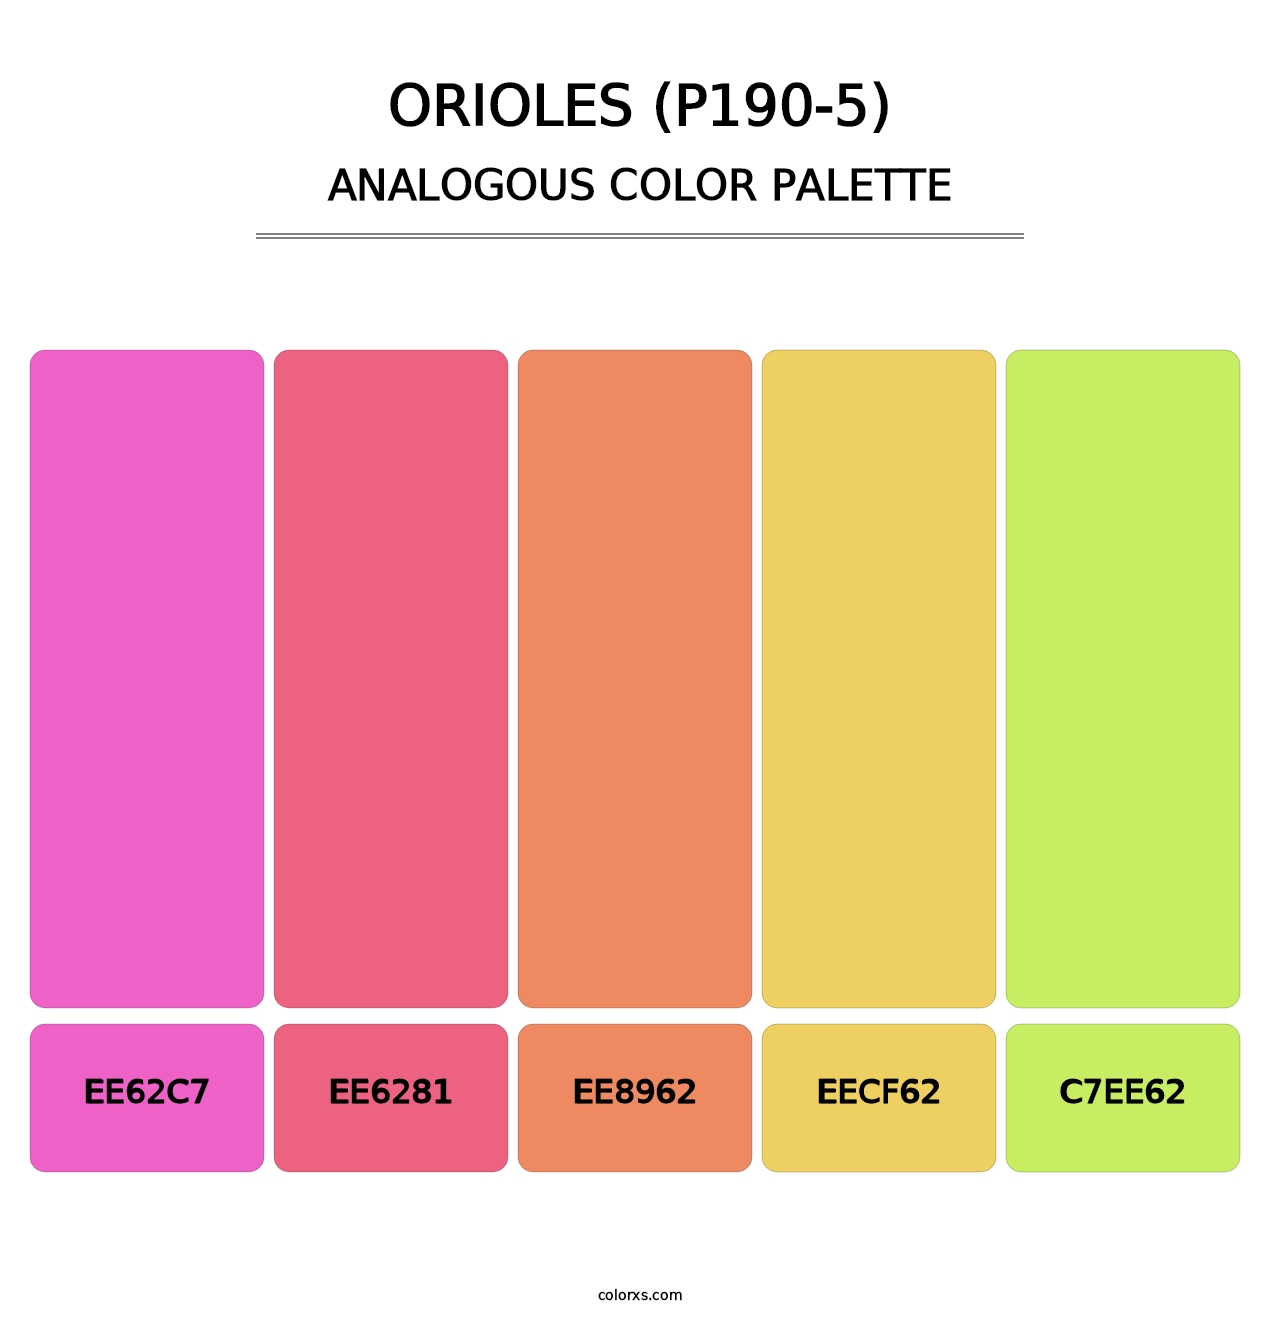 Orioles (P190-5) - Analogous Color Palette